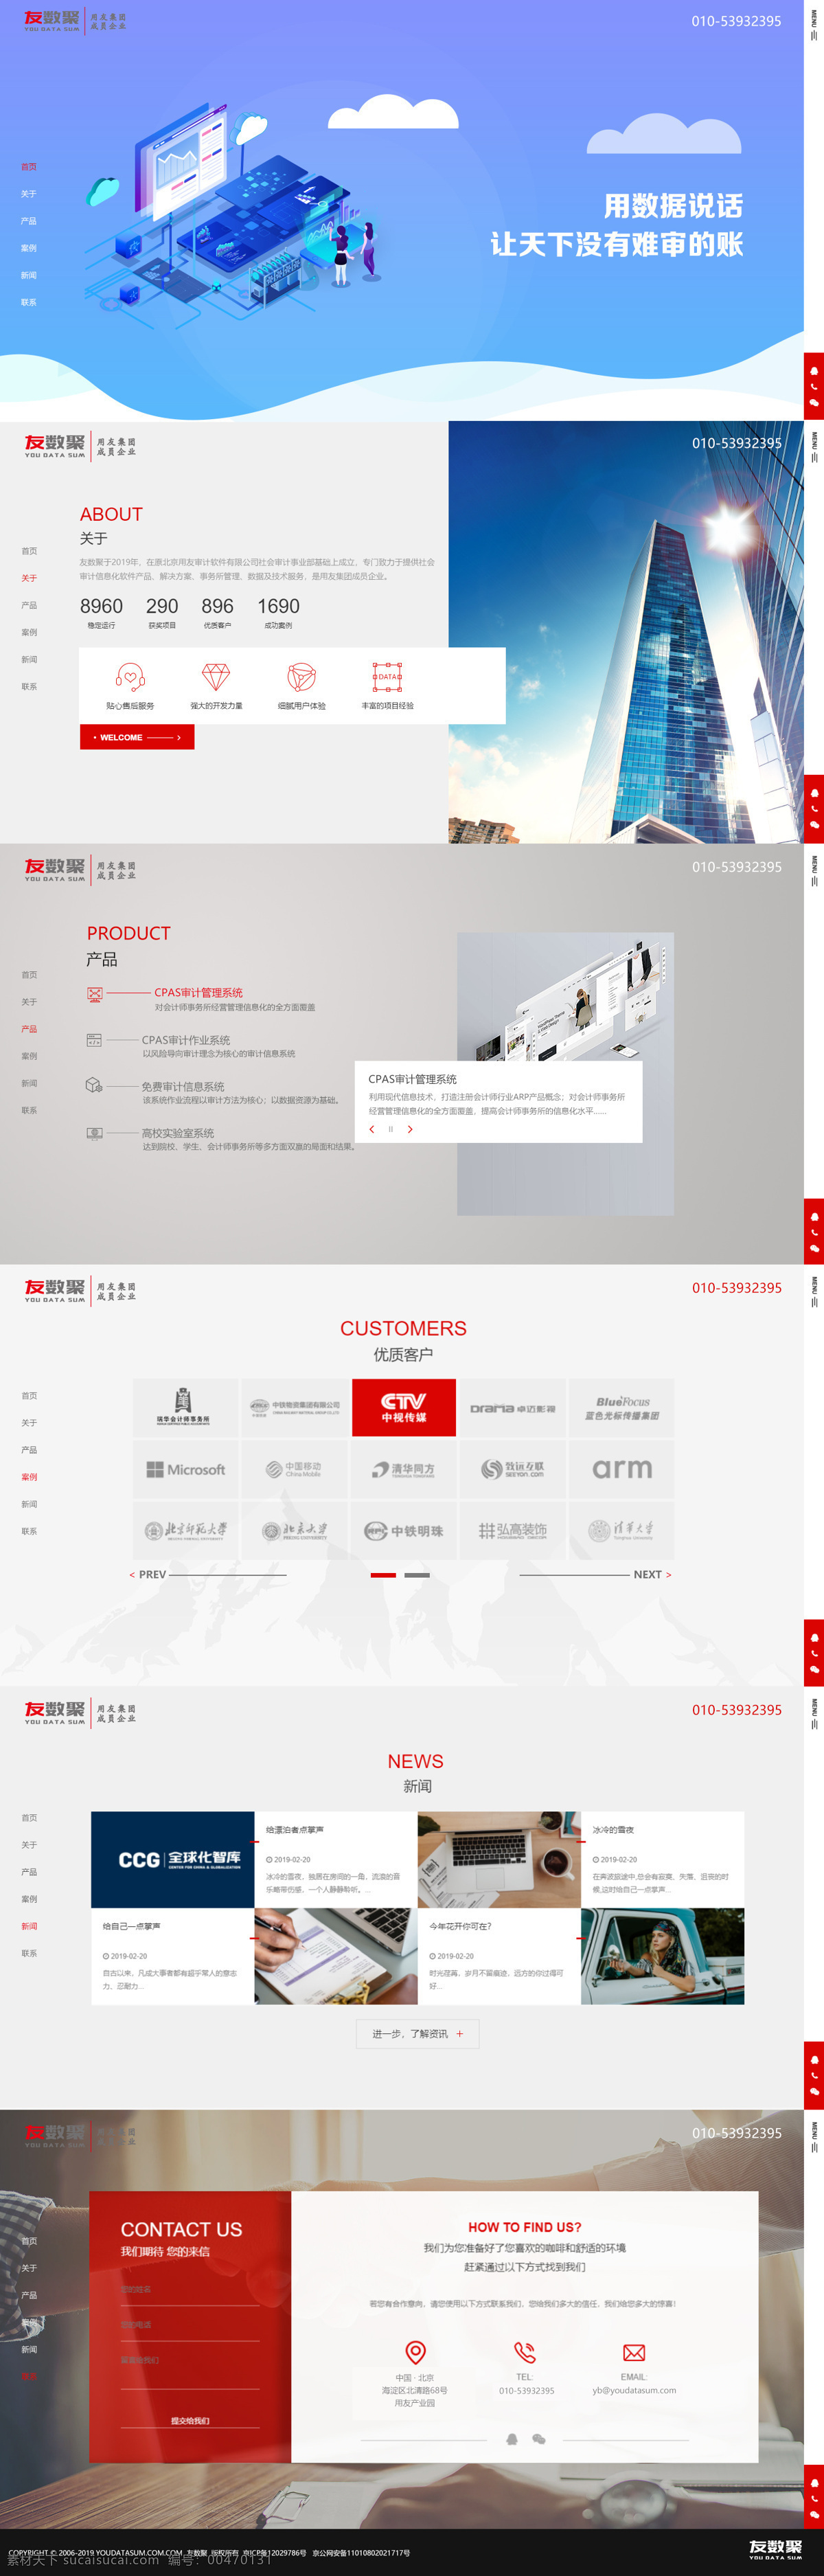 网站设计 ui设计 美工图片 首页 网站首页 web 界面设计 中文模板